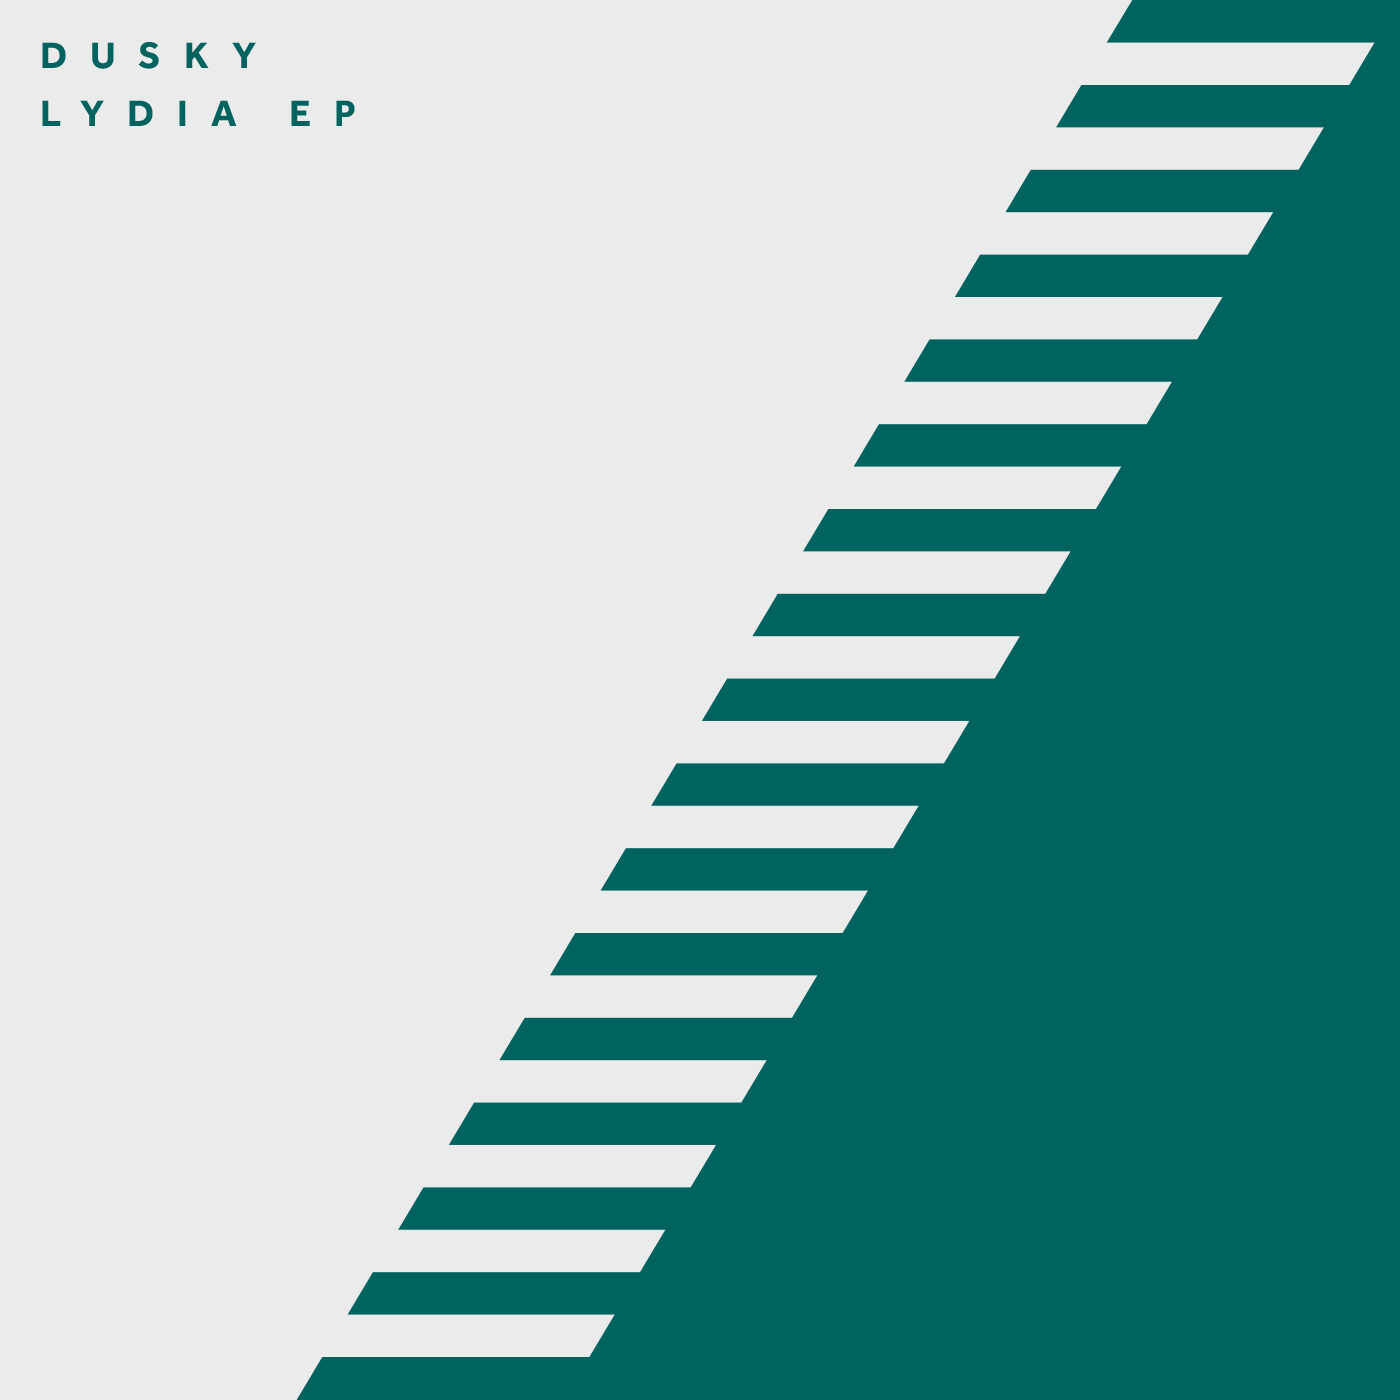 DUSKY – LYDIA EP